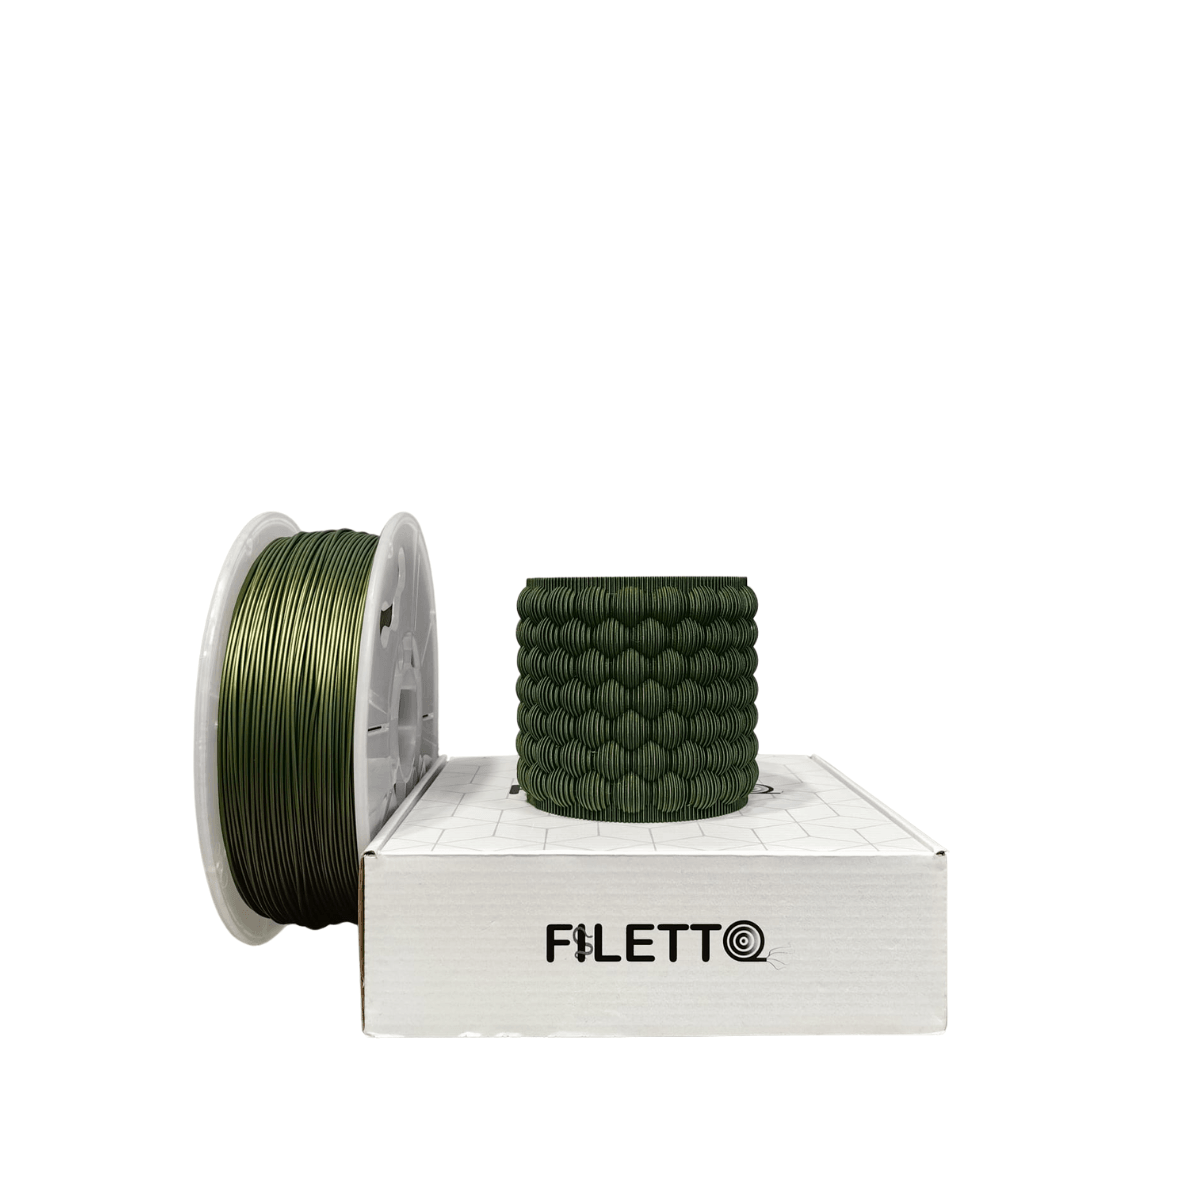 Filetto Pla+ Filament 1.75mm 1 KG